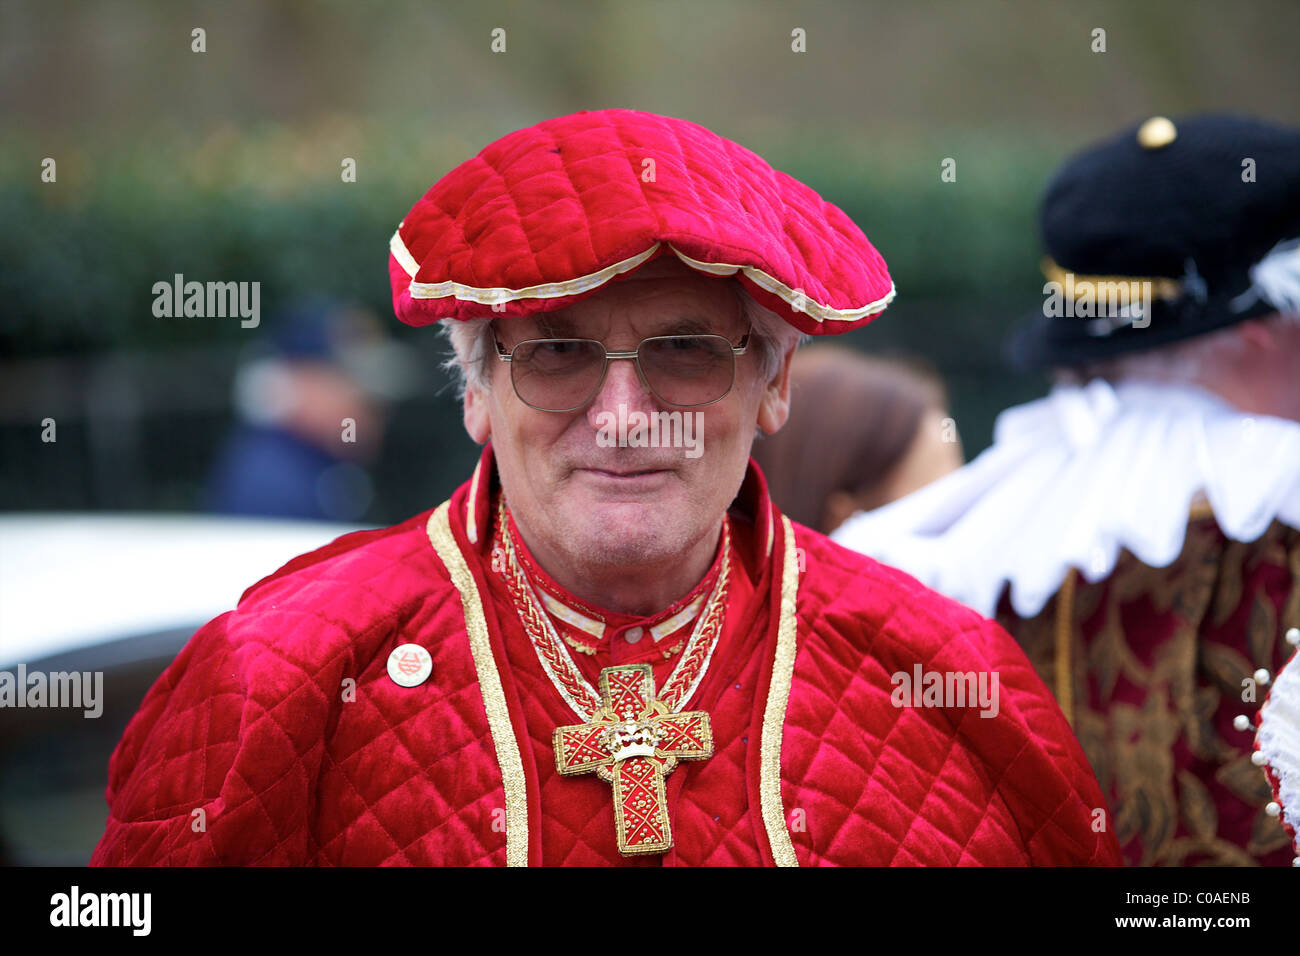 Uomo vestito come il Cardinale Wolsey durante la sfilata di